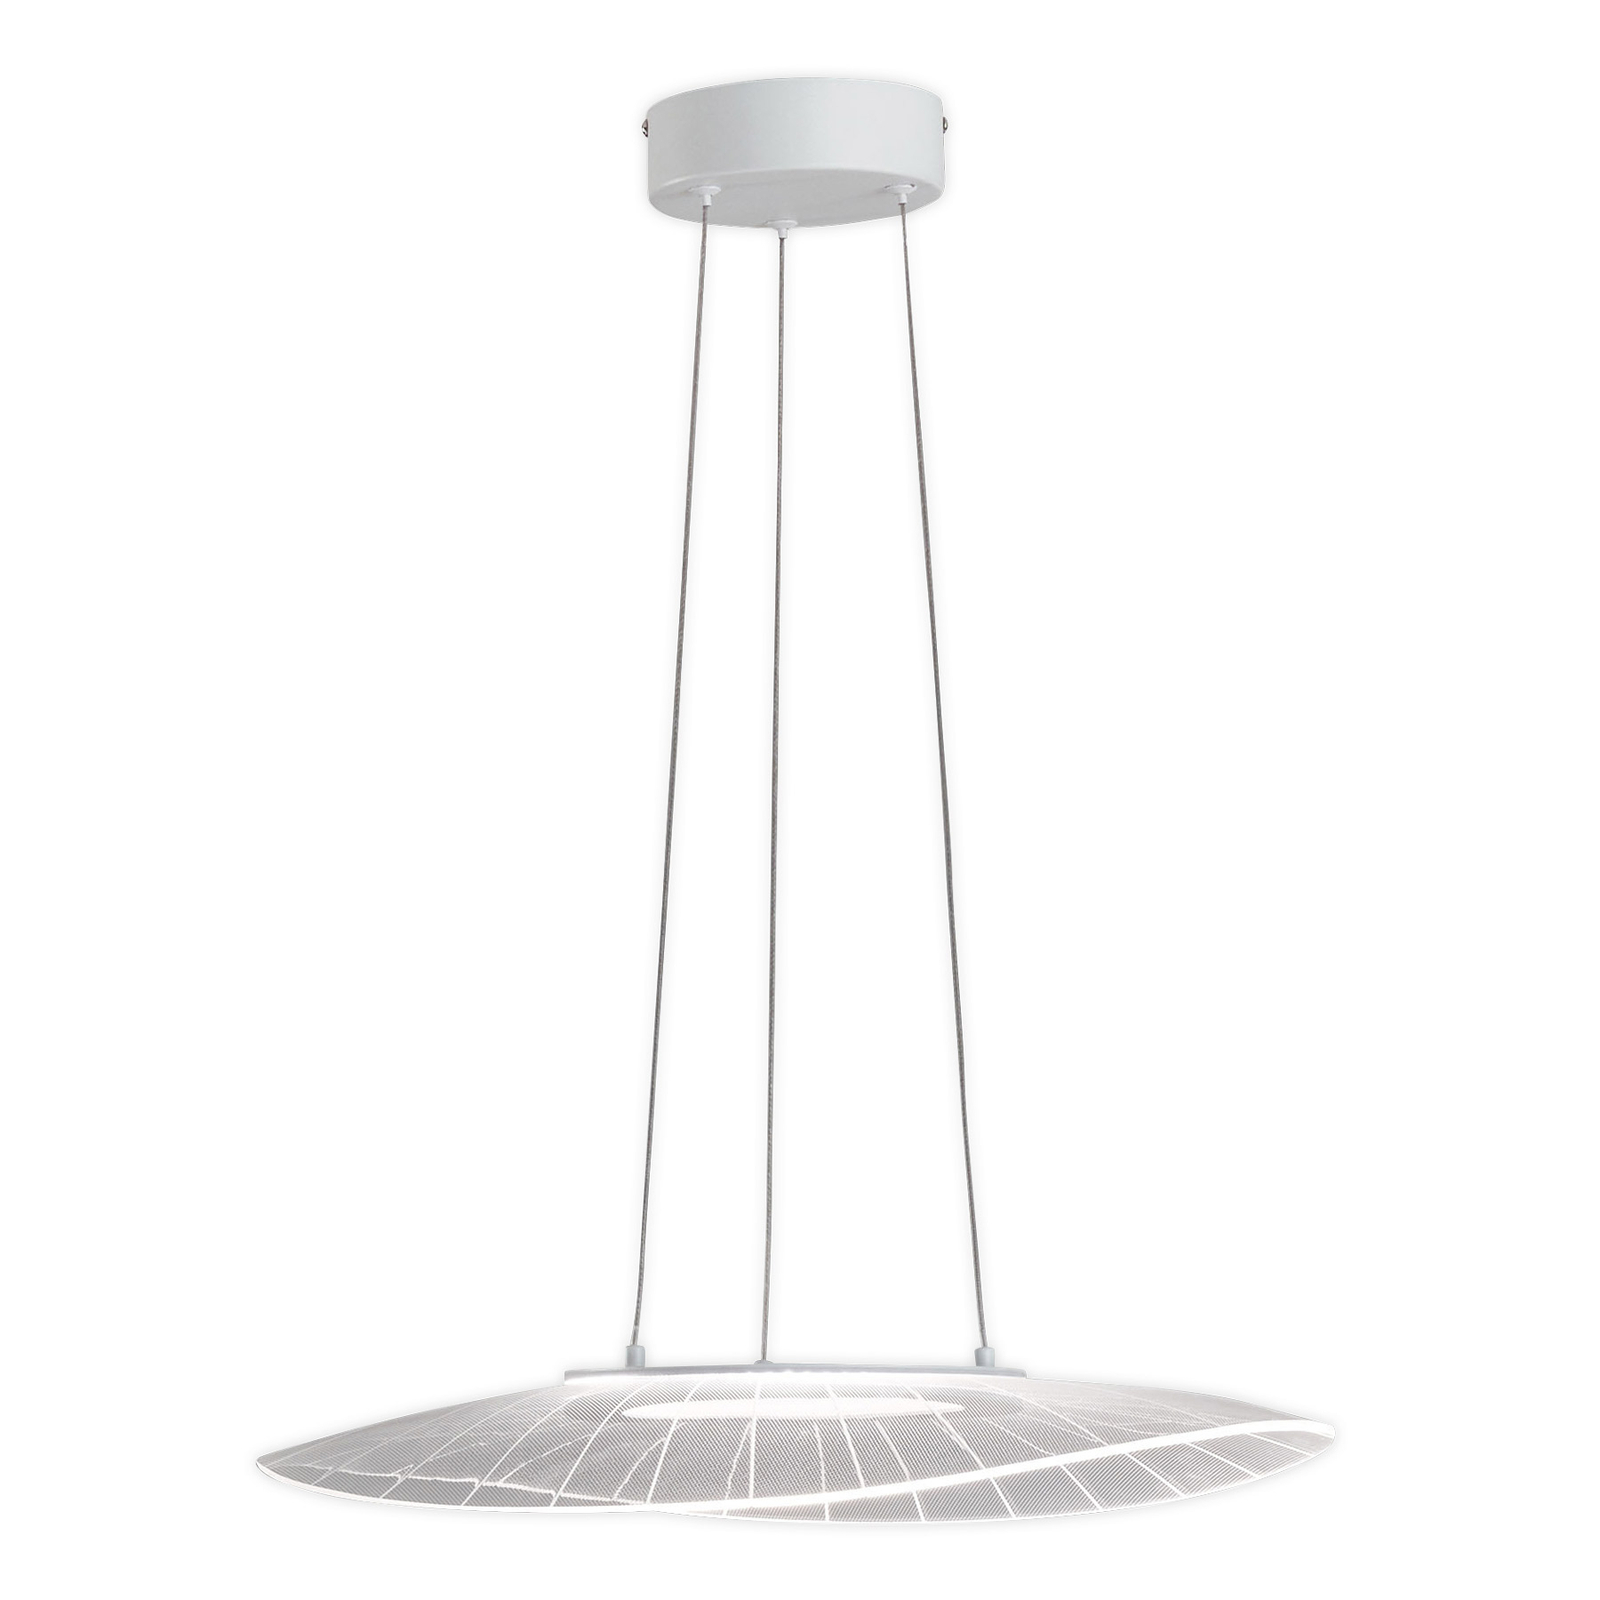 LED-es függőlámpa Vela, fehér, ovális, 59 cm x 43 cm